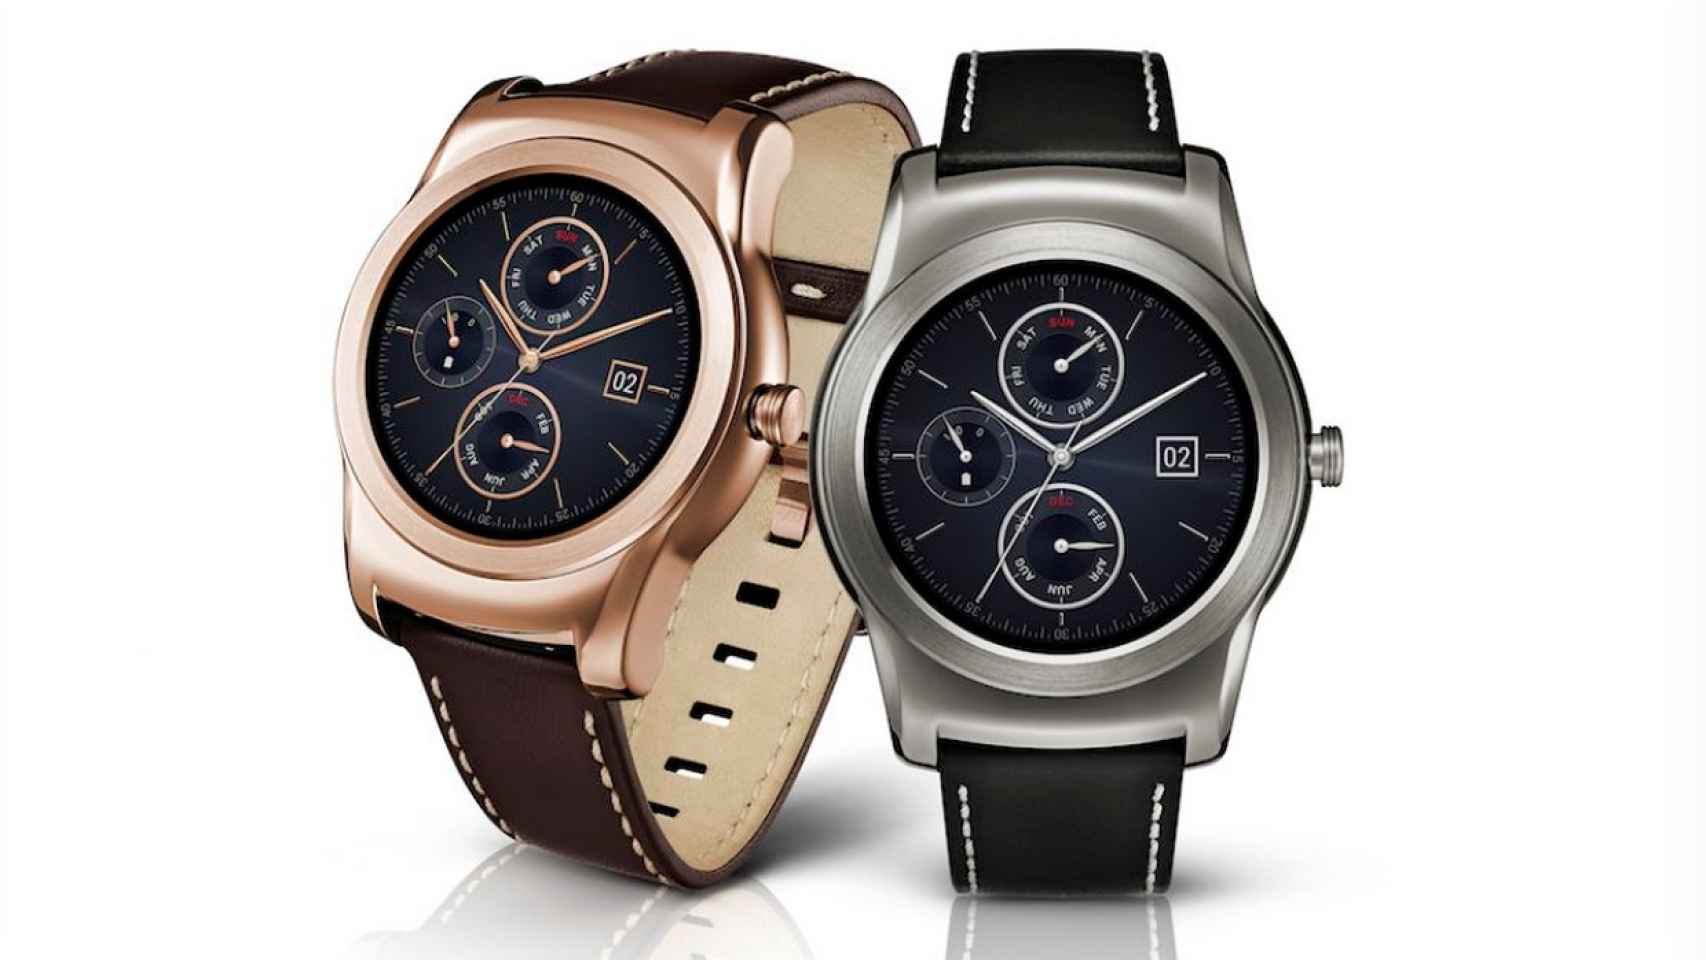 Samsung da detalles sobre el Gear A, un smartwatch redondo